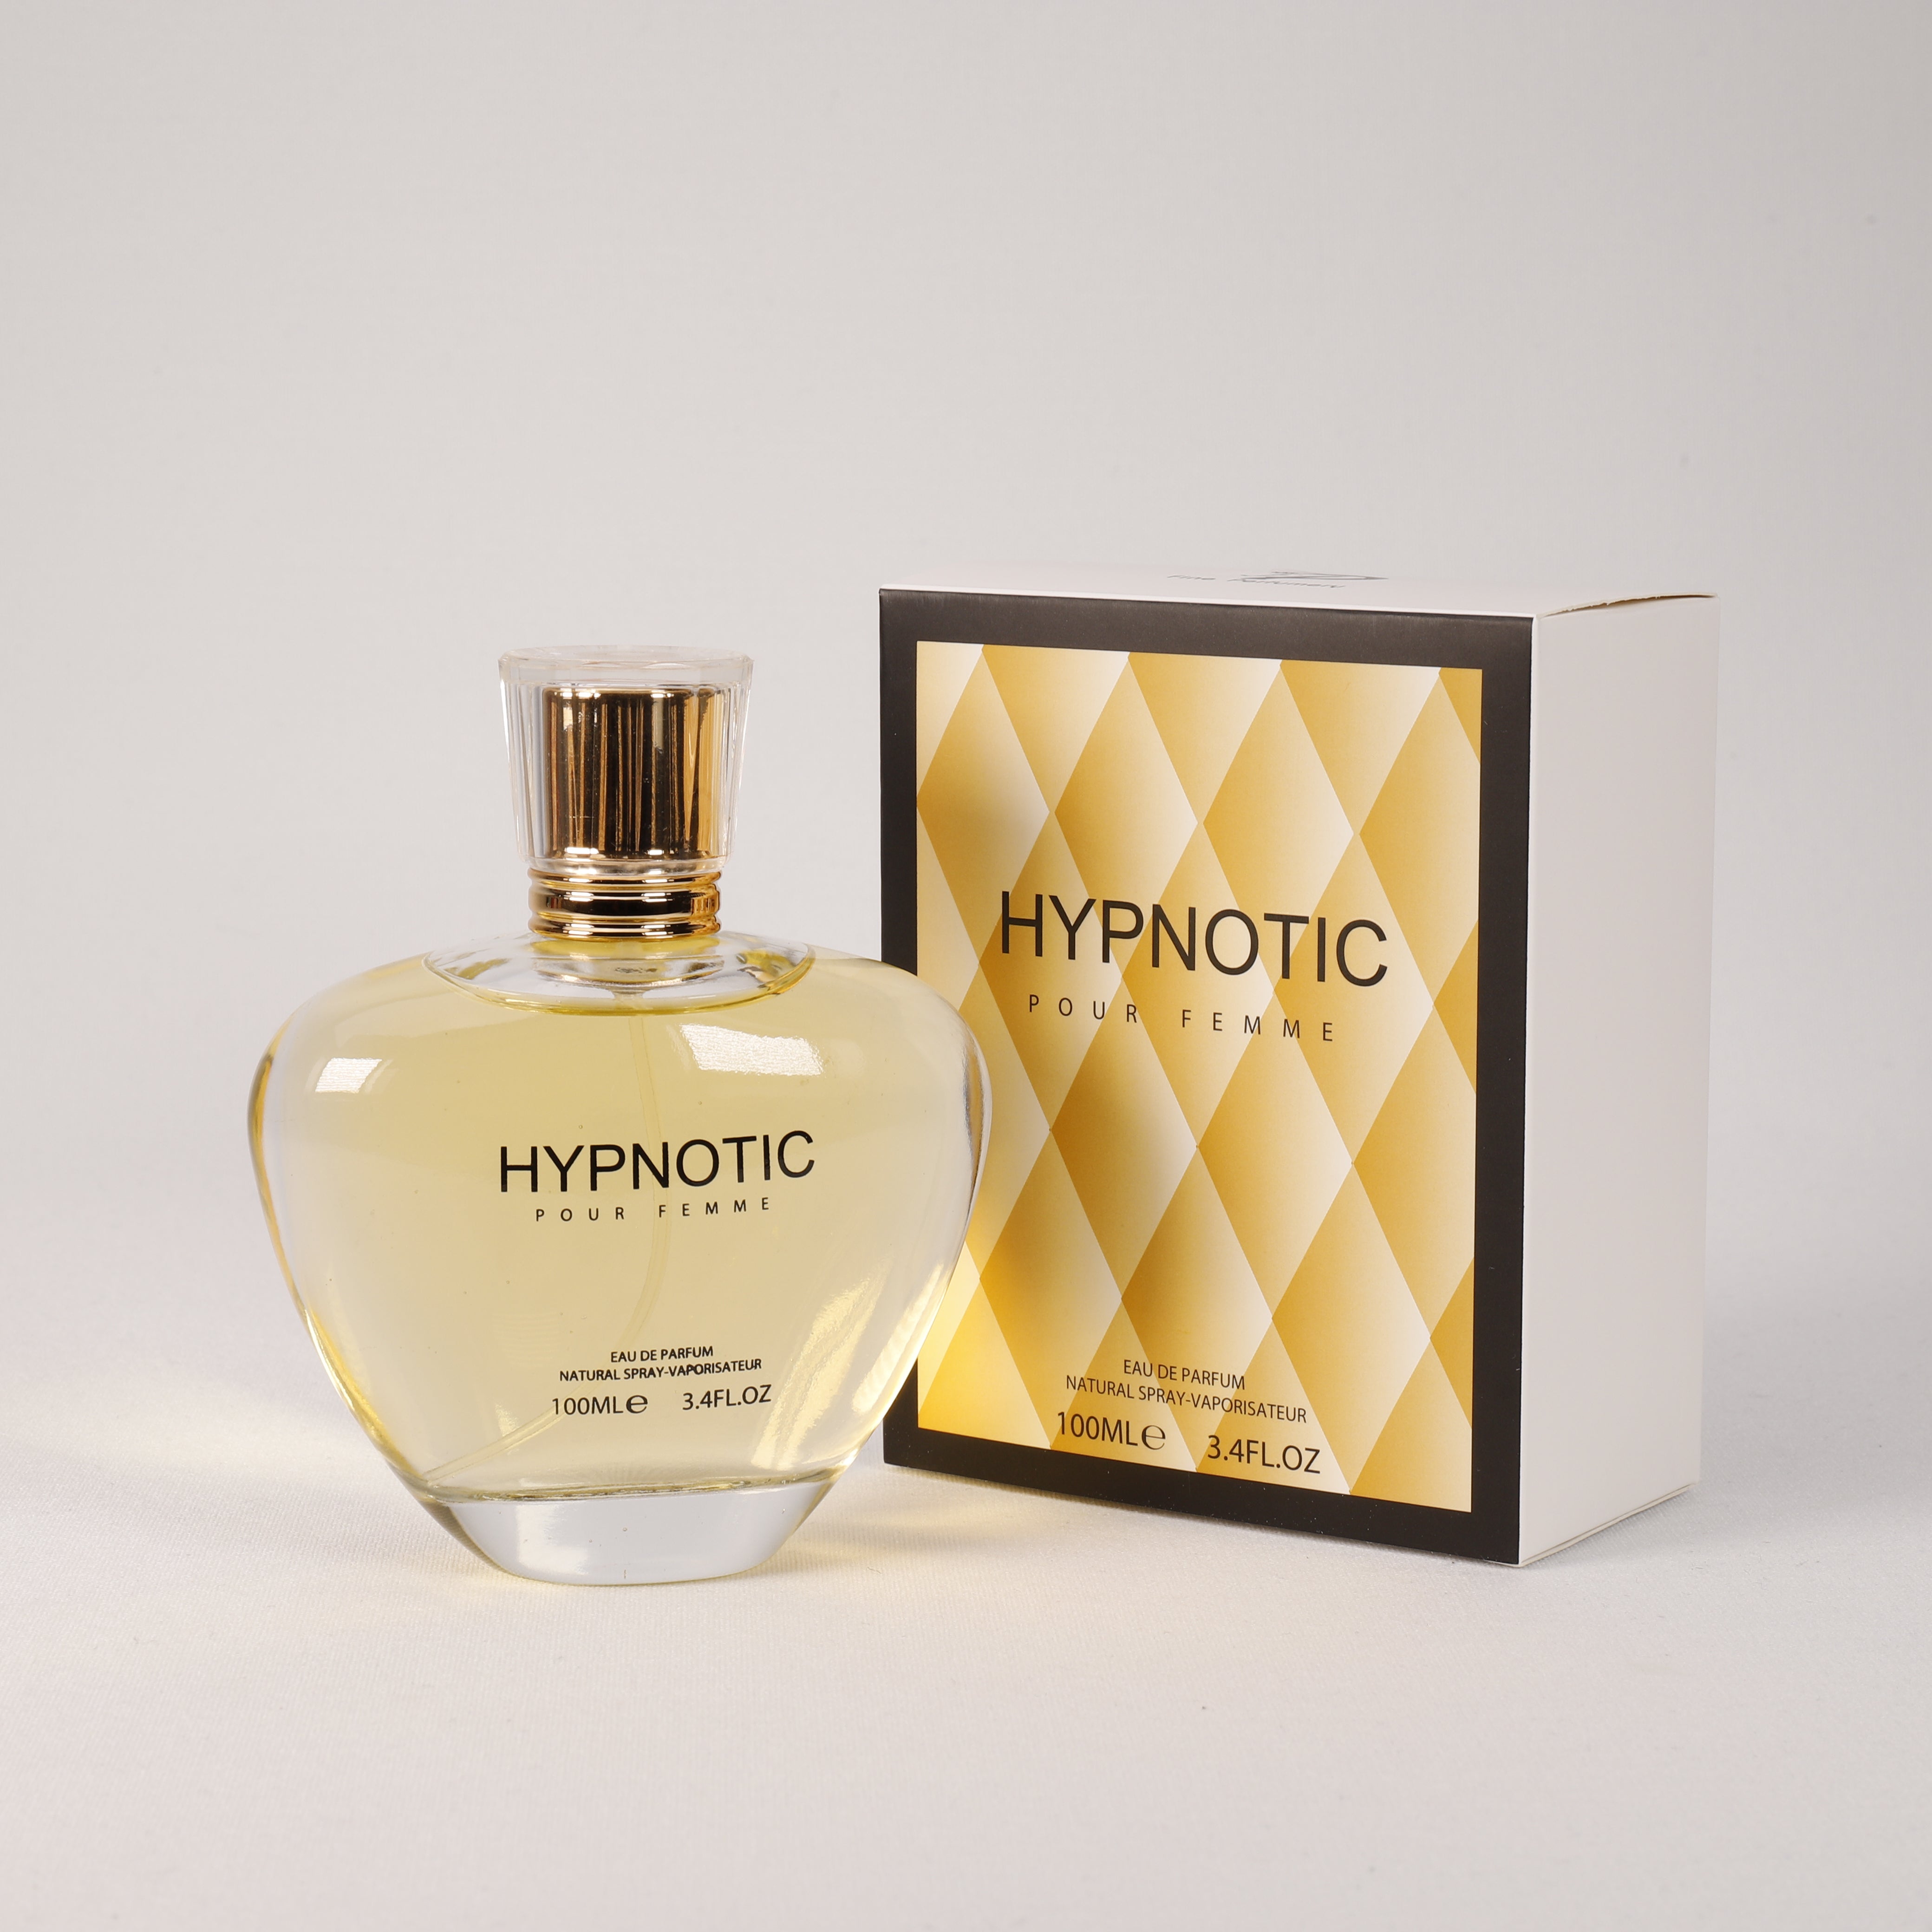 Hypnotic für Damen, Vaporizer mit natürlichem Spray, 100 ml, Duft, Parfum, TOP Parfüm, NEU OVP